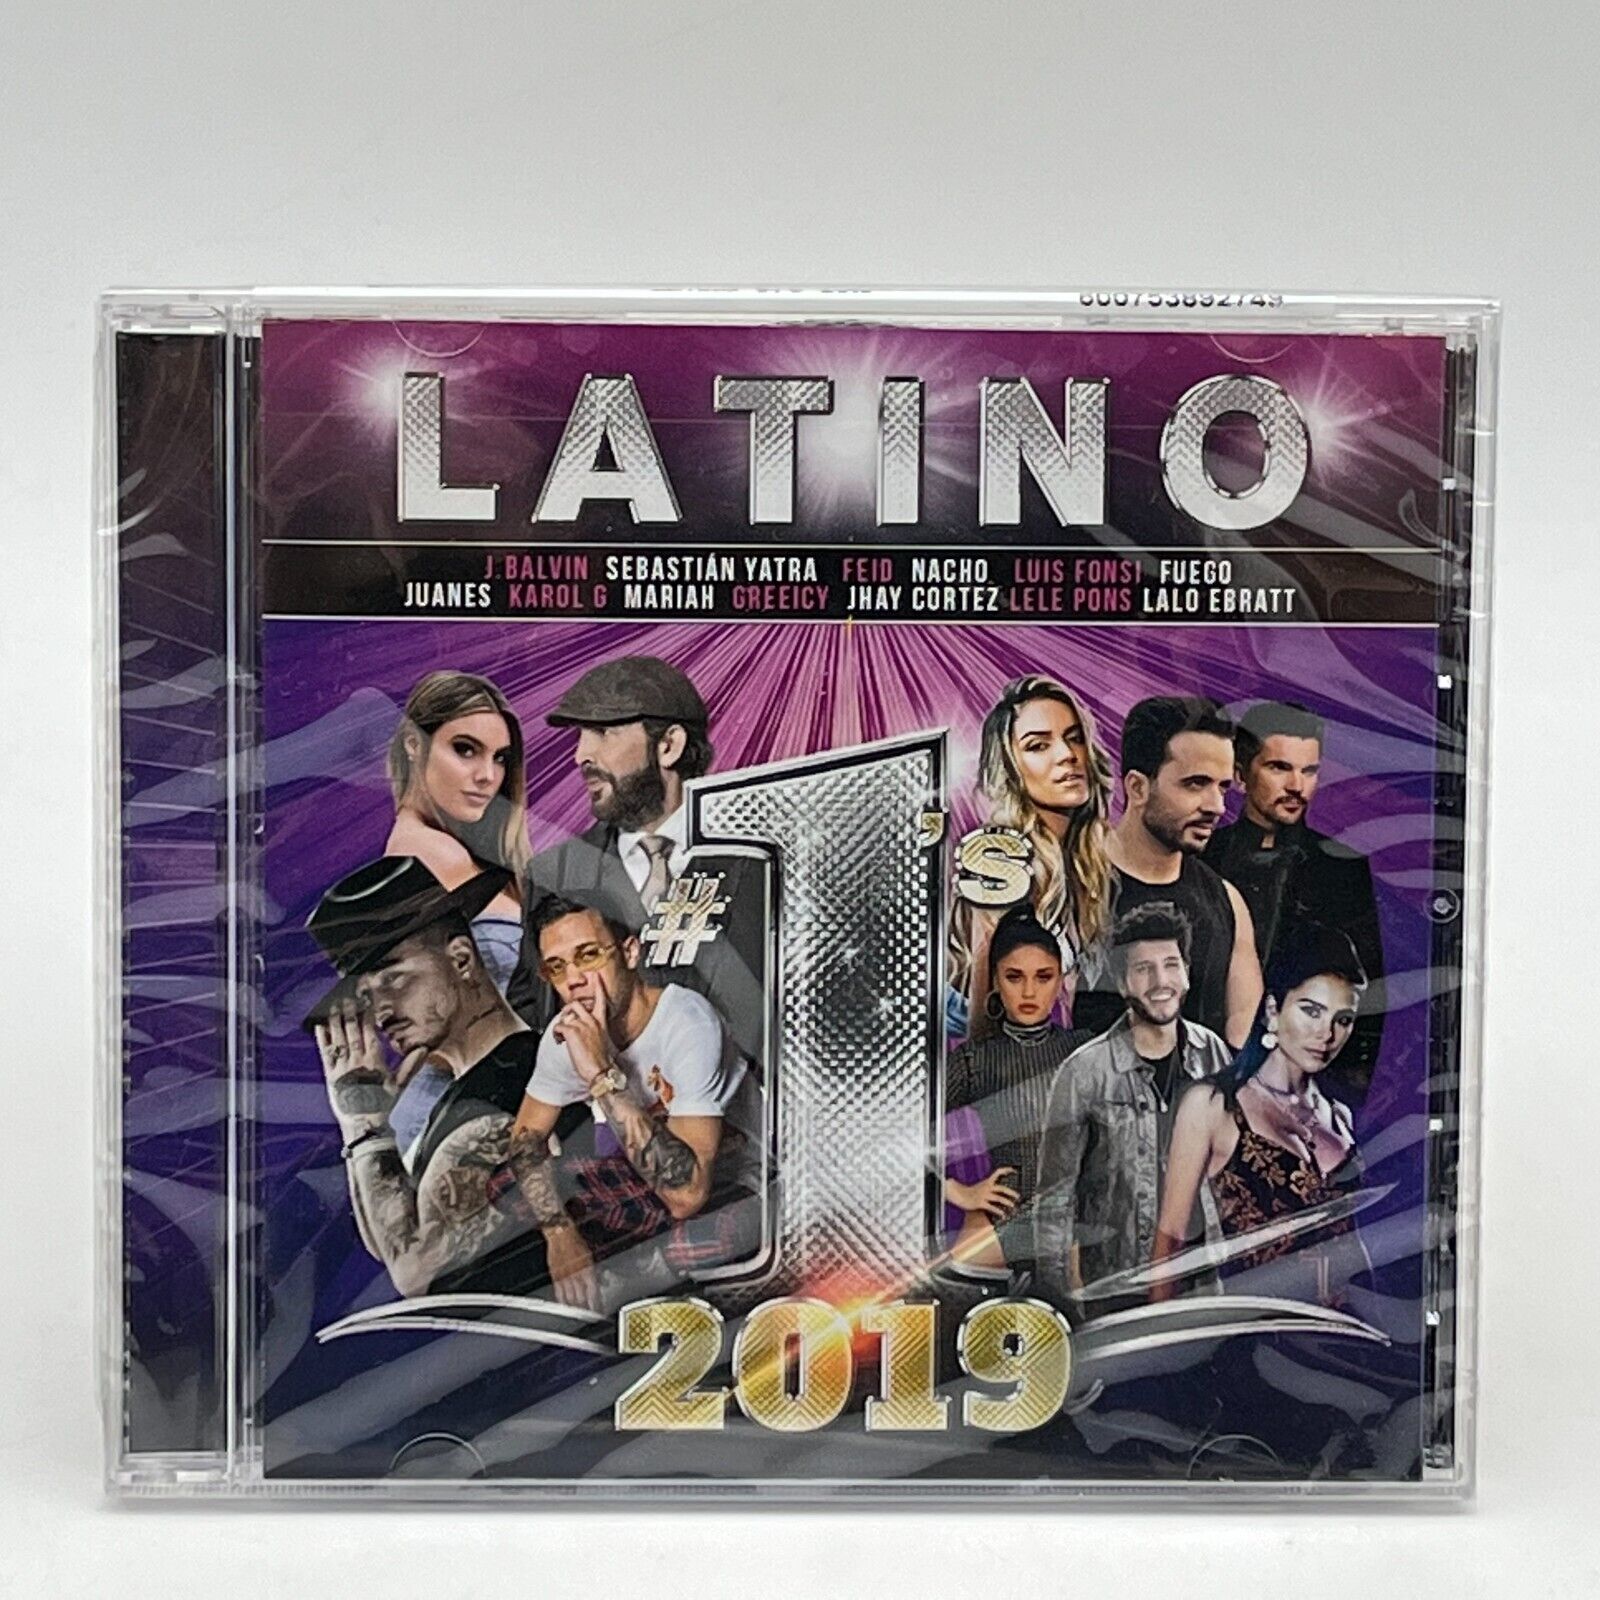 Various Artists - Latino #1's 2019 - Universal Music Latino - CD Album